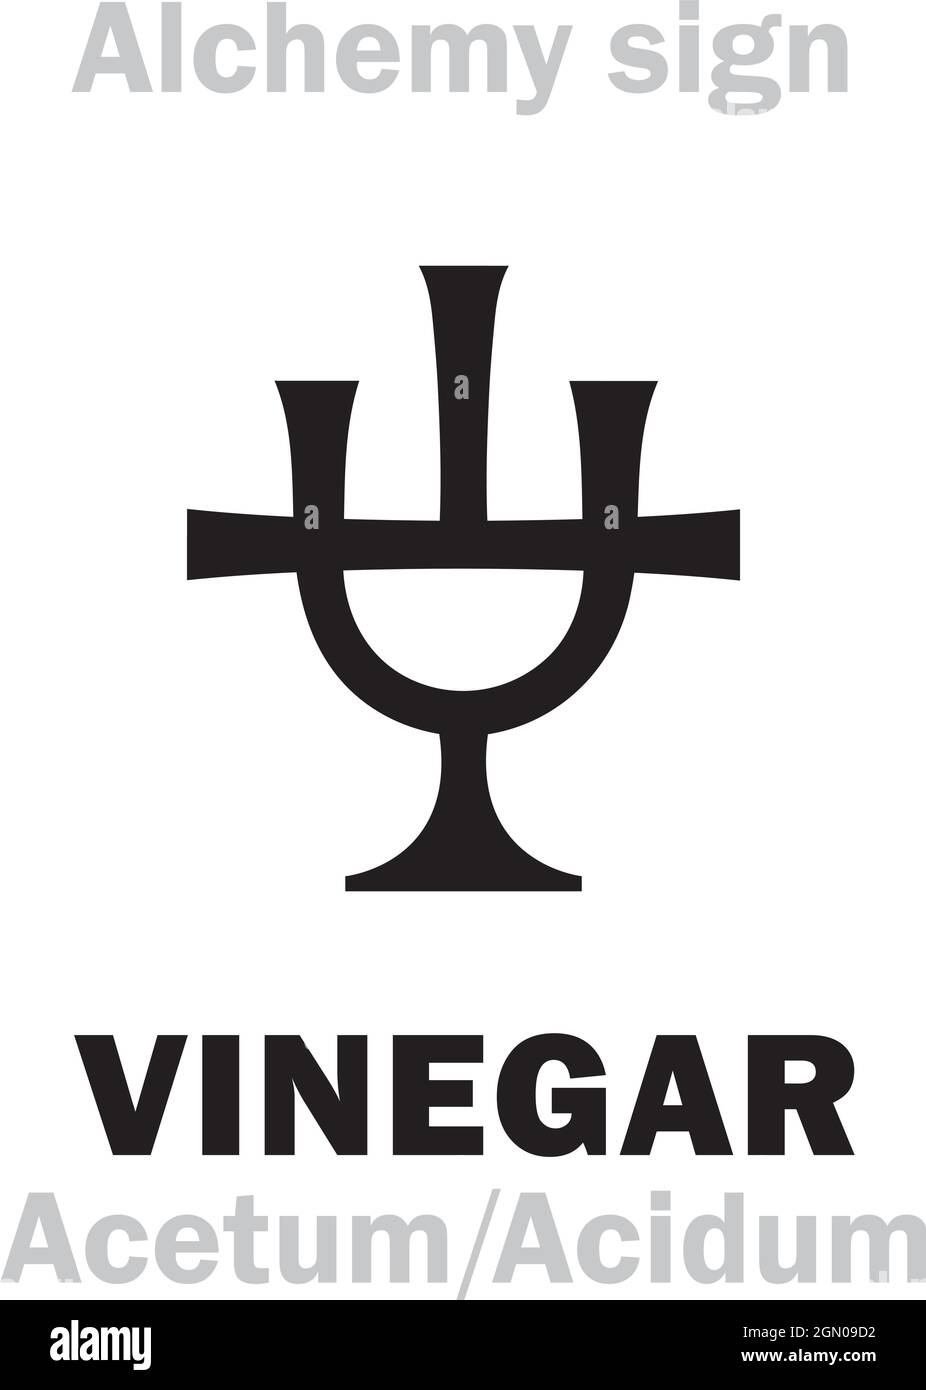 Alchemy Alphabet: ACID (Acidum) / VINEGAR (Acetum) < «Vyn egre» sour wine < Lat.: vinum (wine) + acer (sour) — corrosive sour-tasting liquid, oxidant. Stock Vector